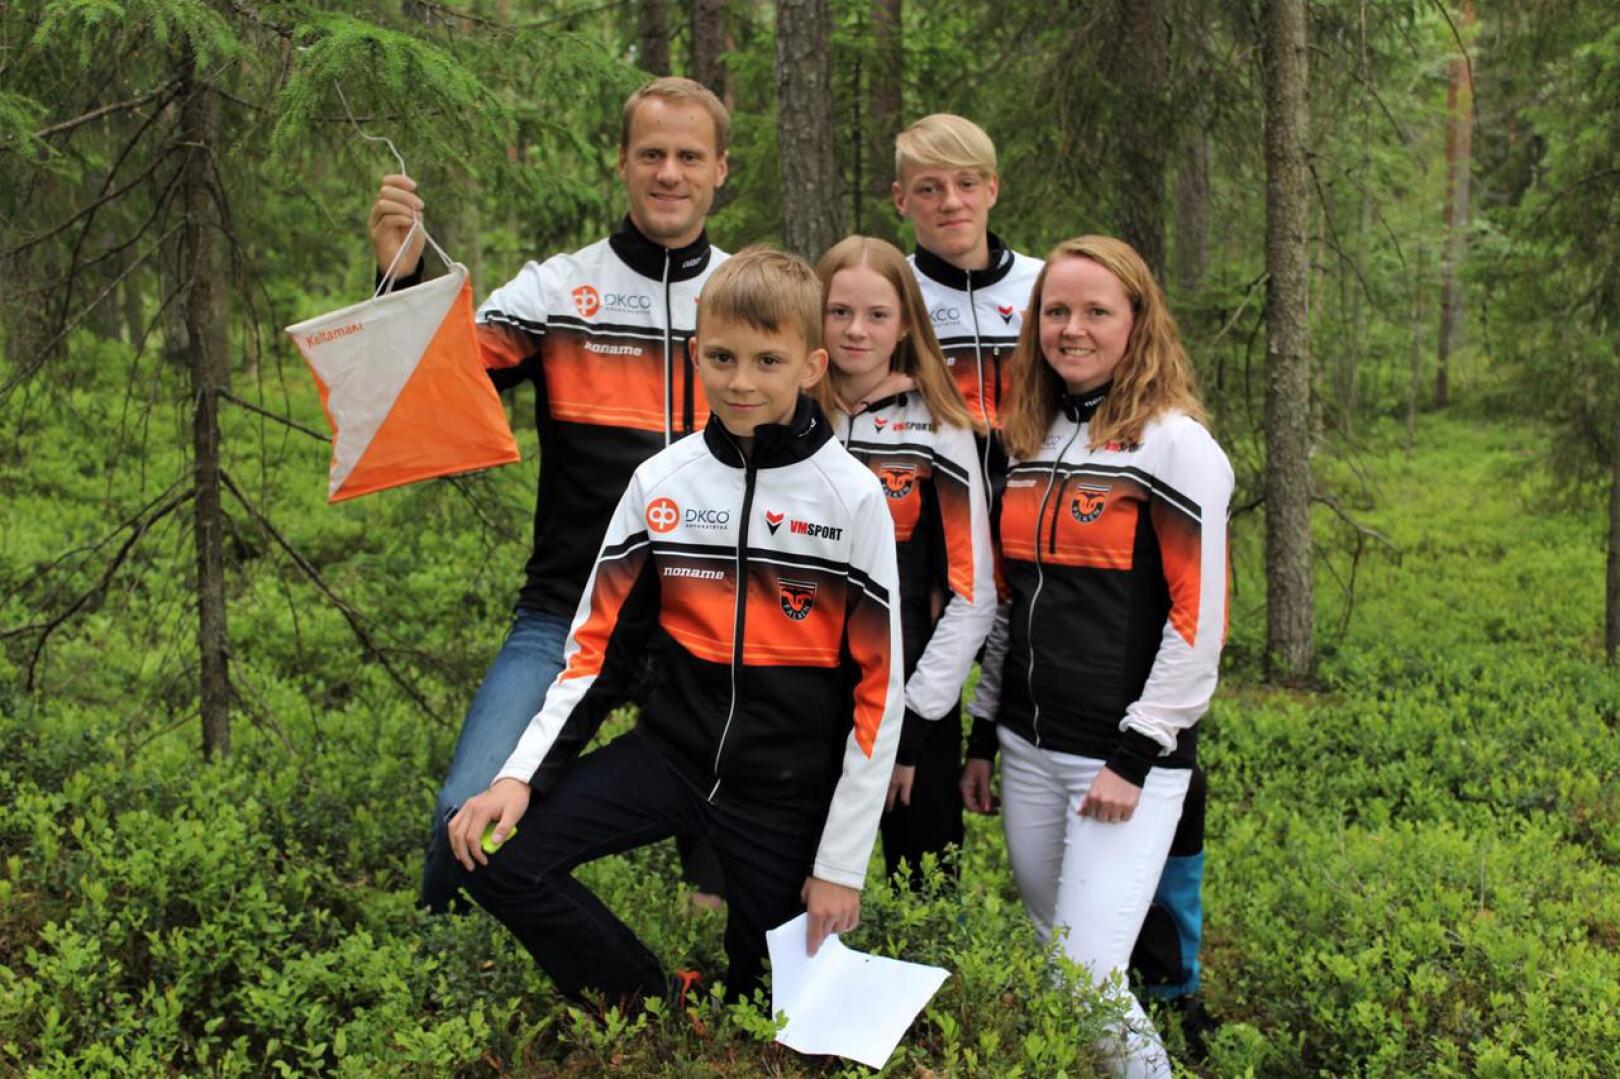 Rastilippu löydetty! Kuvassa Sören ja Emil Jansson (takana vasemmalta) sekä Lukas, Mia ja Tuija Jansson (edessä vasemmalta).